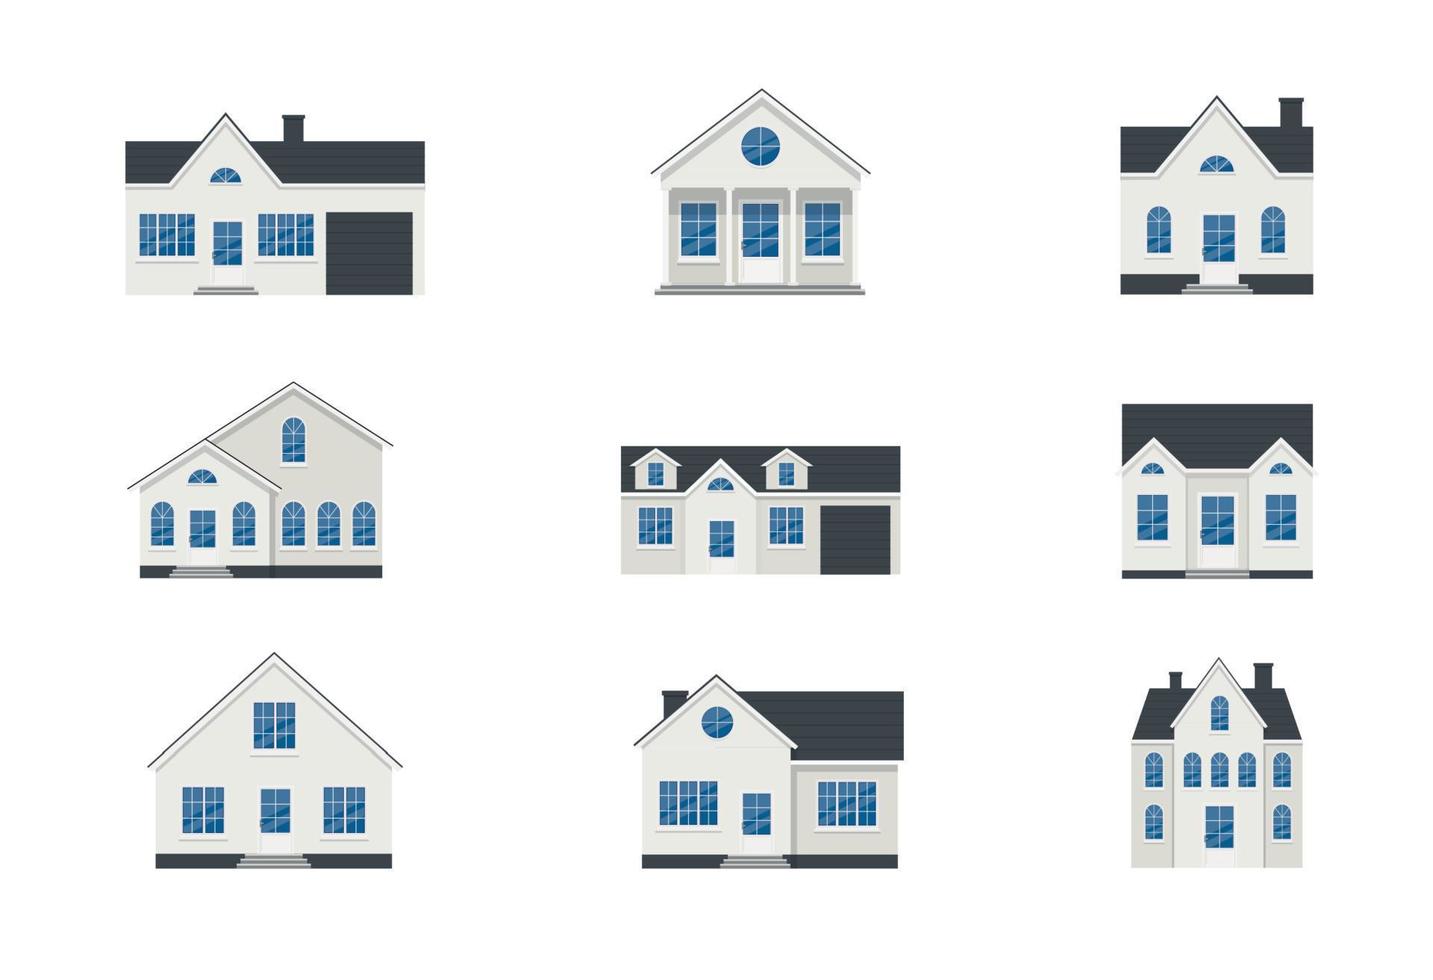 reeks van huizen. stedelijk en buitenwijk, huisje, stad- huis. buitenkant, voorkant visie. geïsoleerd vector illustratie